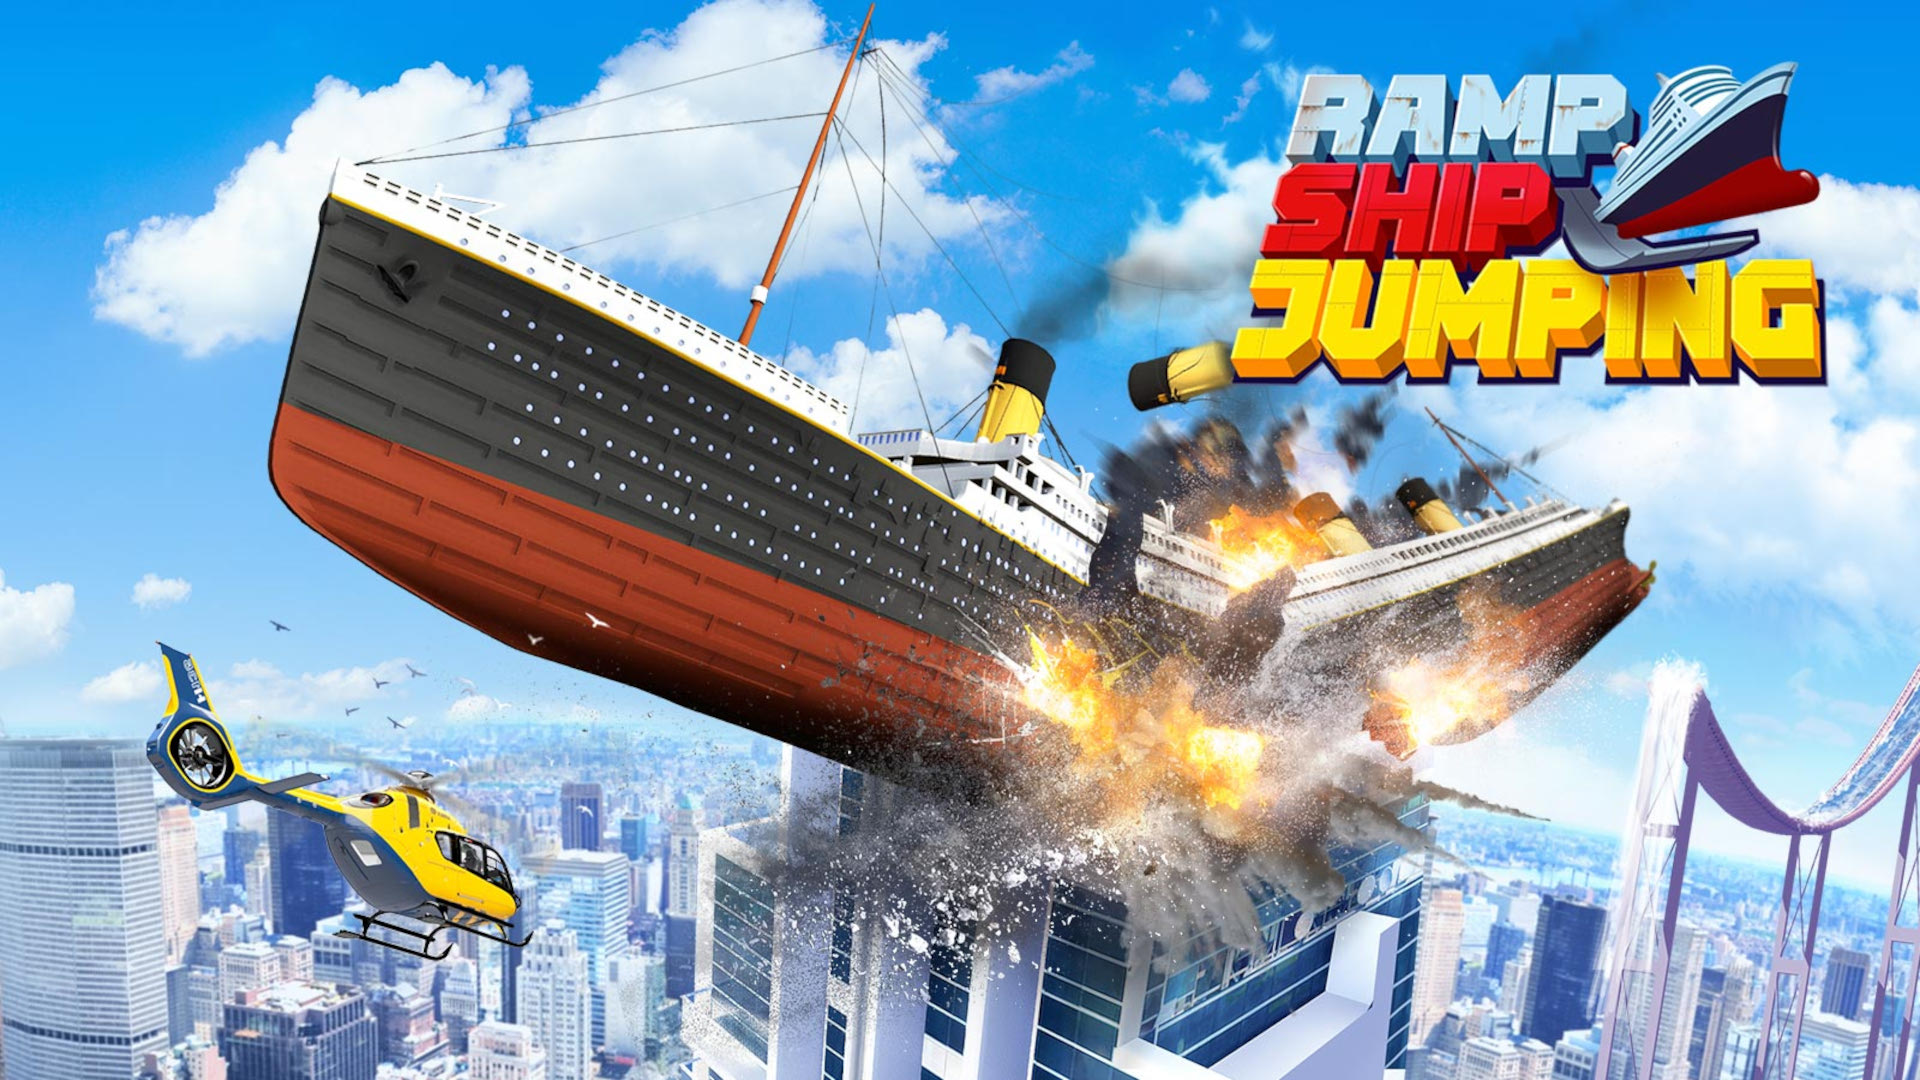 Ship Ramp Jumping Game Image